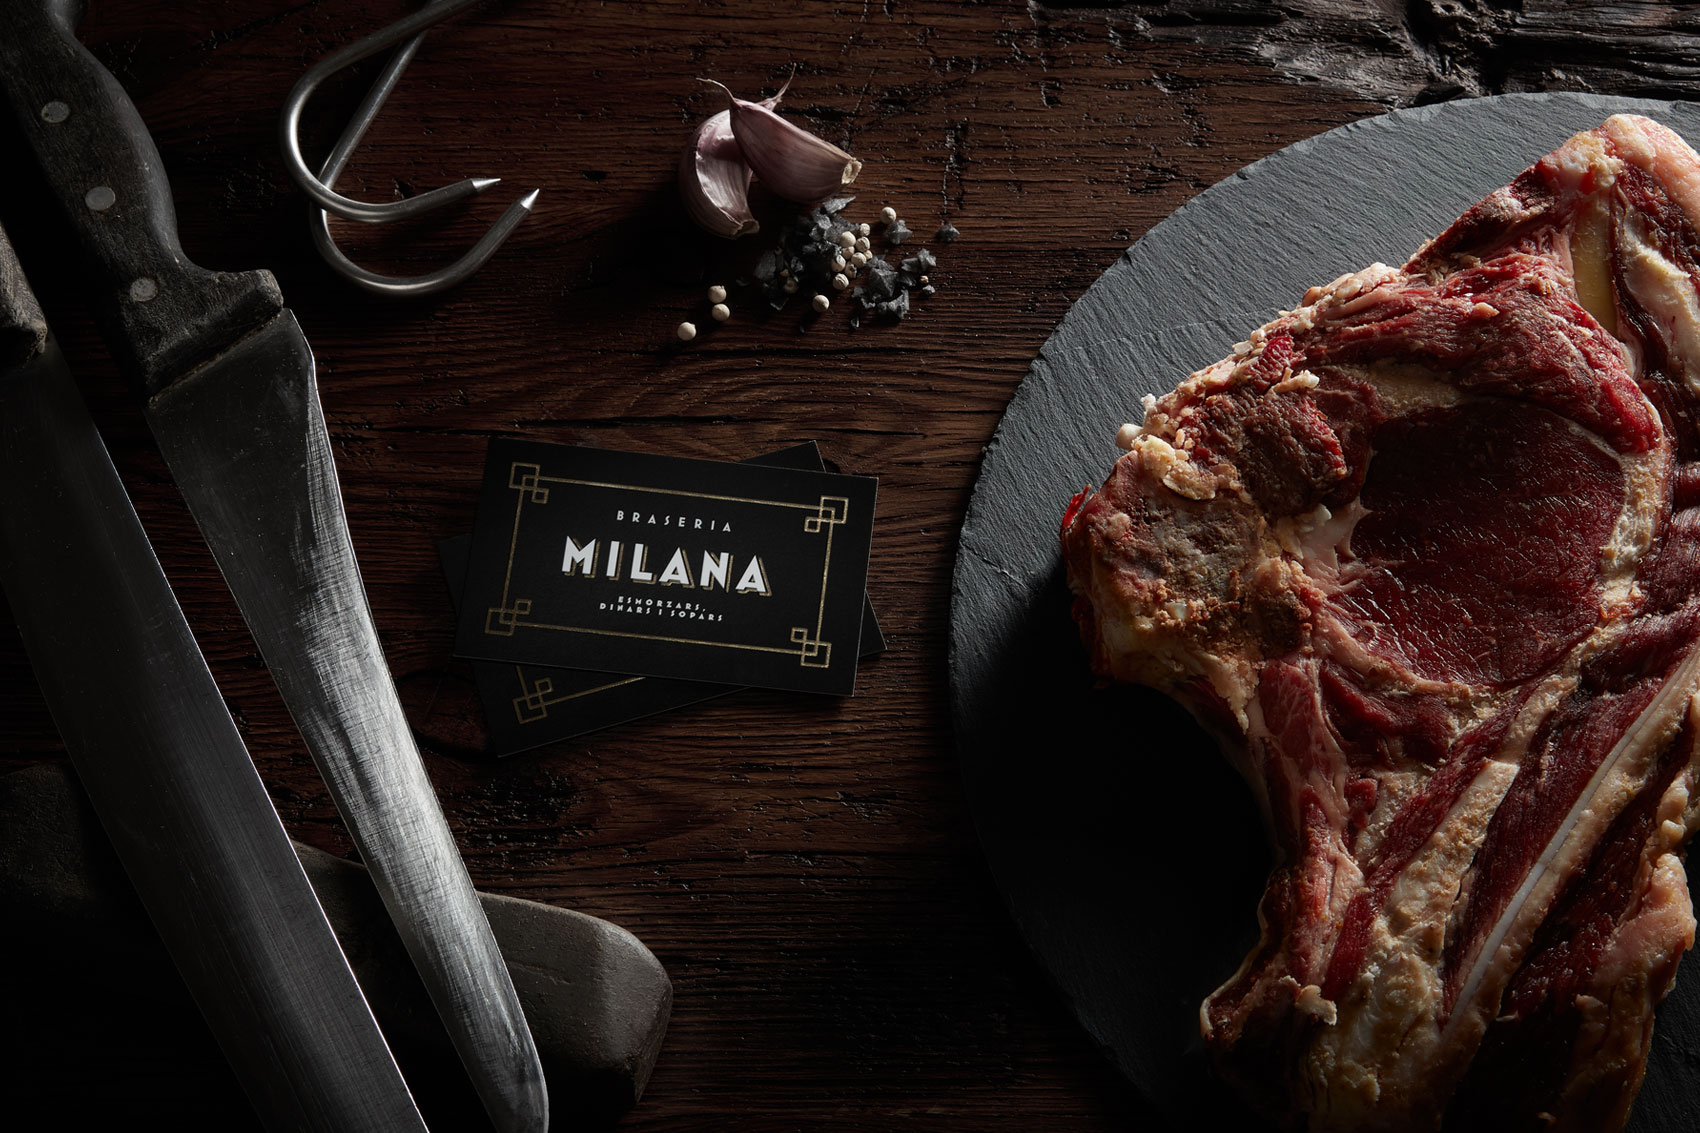 Targetes de visita amb el nou logo del restaurante Braseria La Milana al costat de chuletón i ganivet